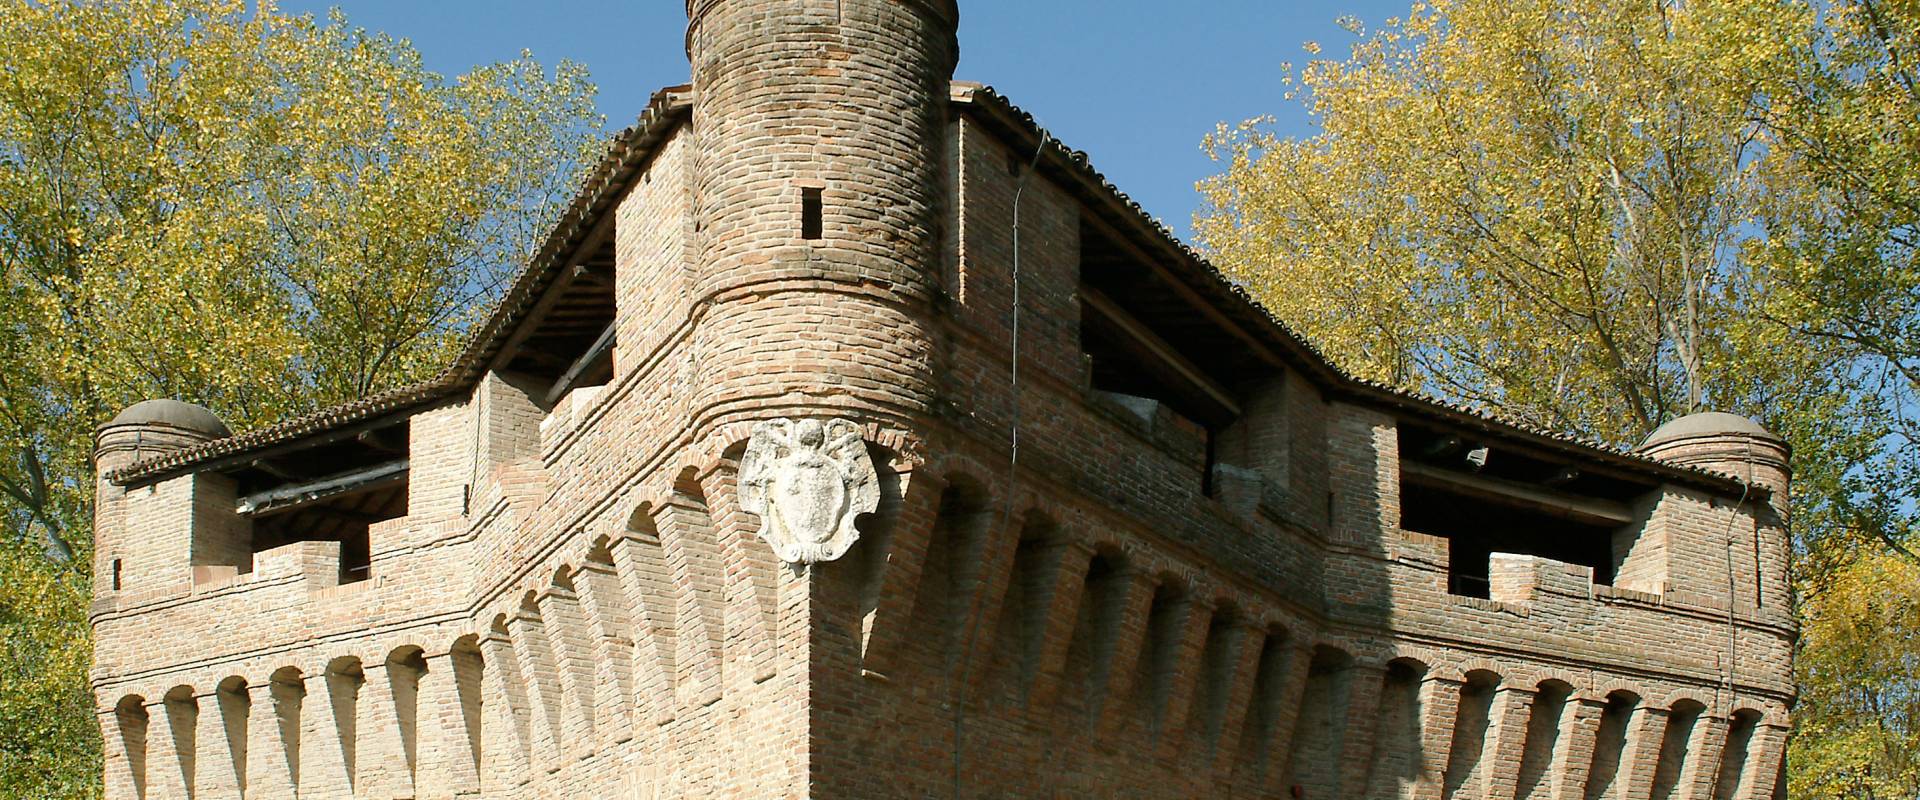 Stellata, Rocca Possente foto di Baraldi